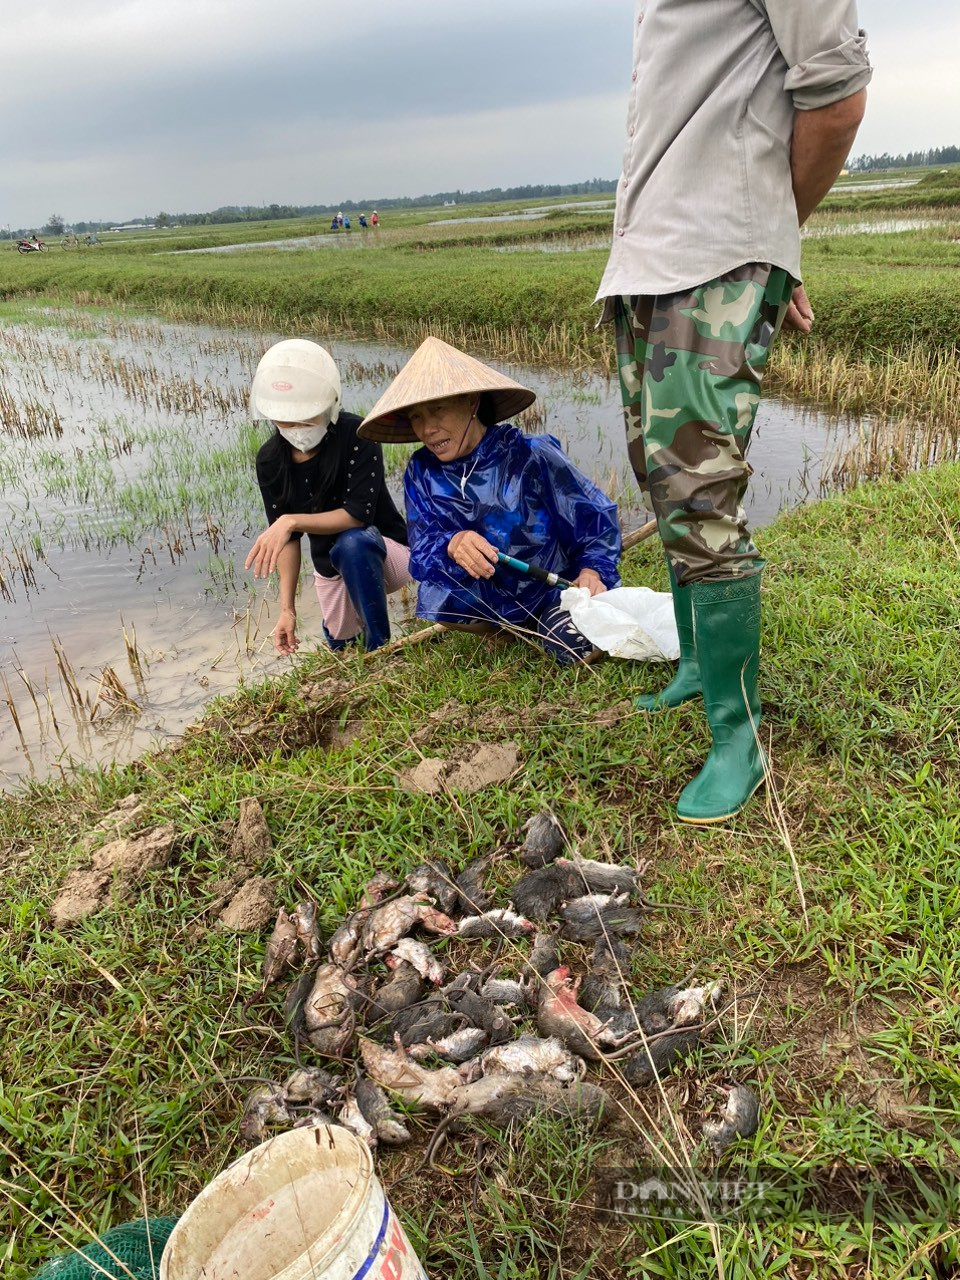 Tranh thủ mùa mưa, nông dân Hà Tĩnh ra quân diệt chuột bảo vệ mùa màng lại bán được giá cao - Ảnh 3.